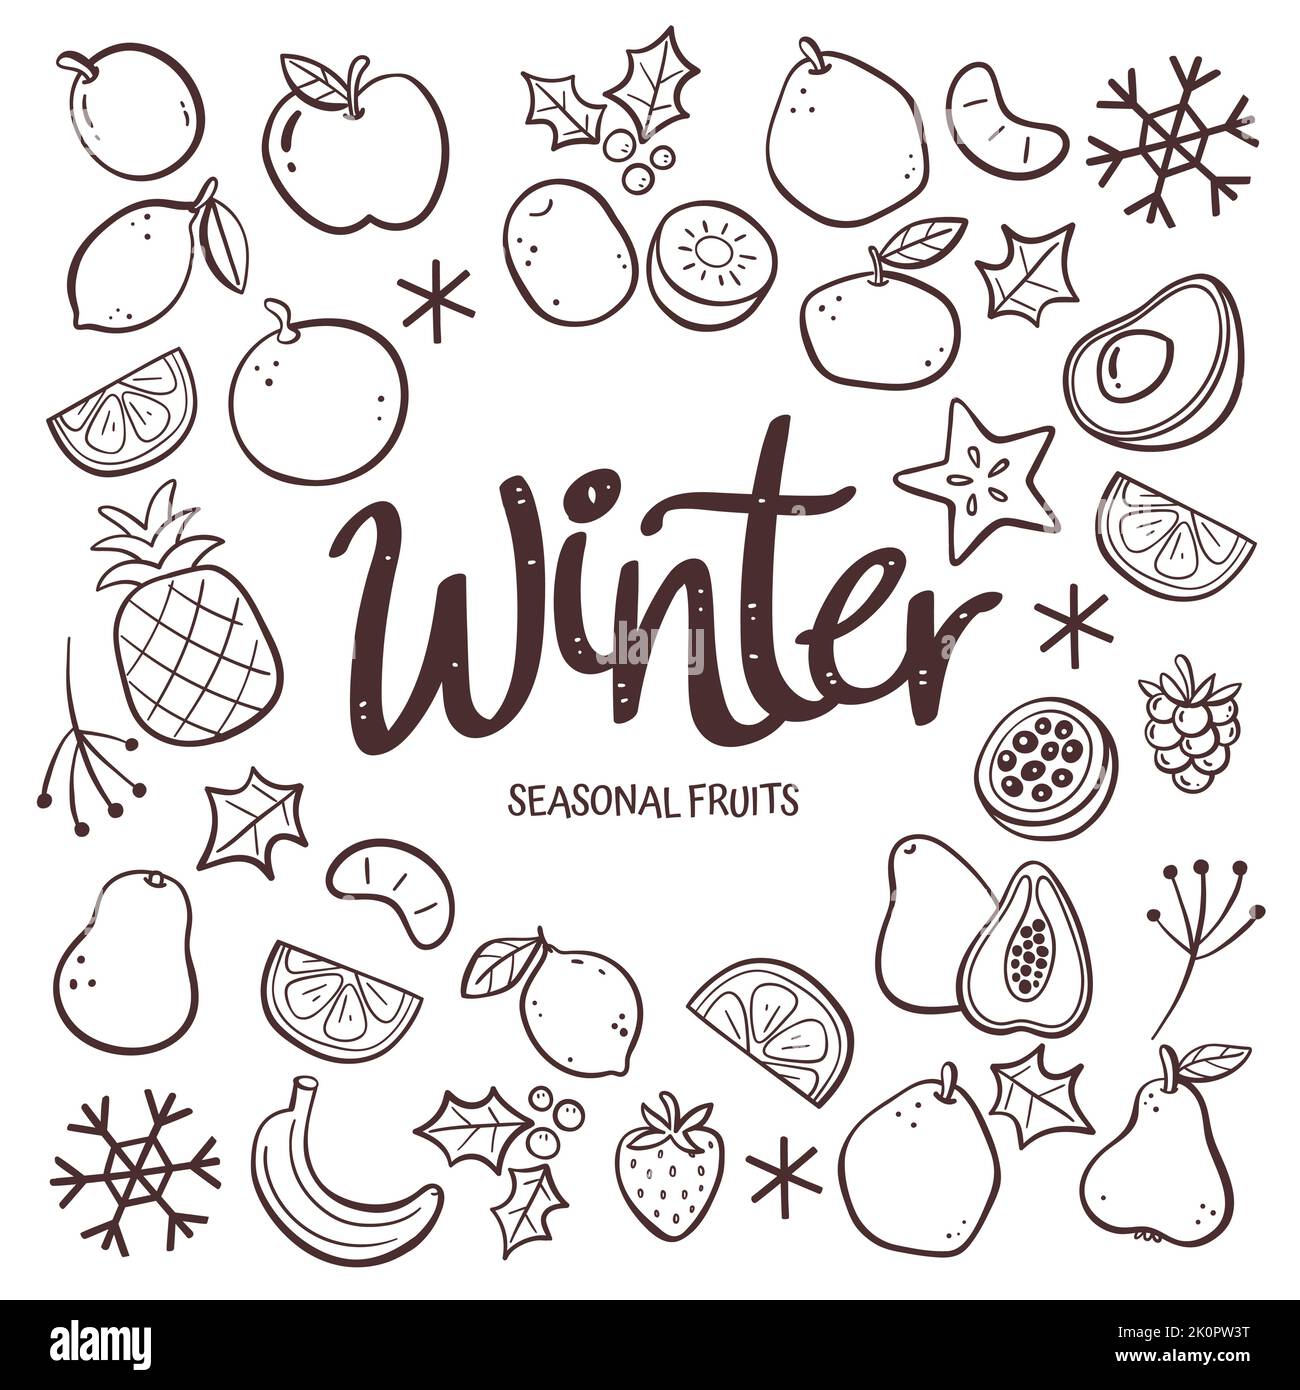 Saisonale Früchte Hintergrund. Handgezeichnete Winterfrucht-Komposition aus Doodle-Vektor-Icons, isoliert auf weißem Hintergrund. Stock Vektor